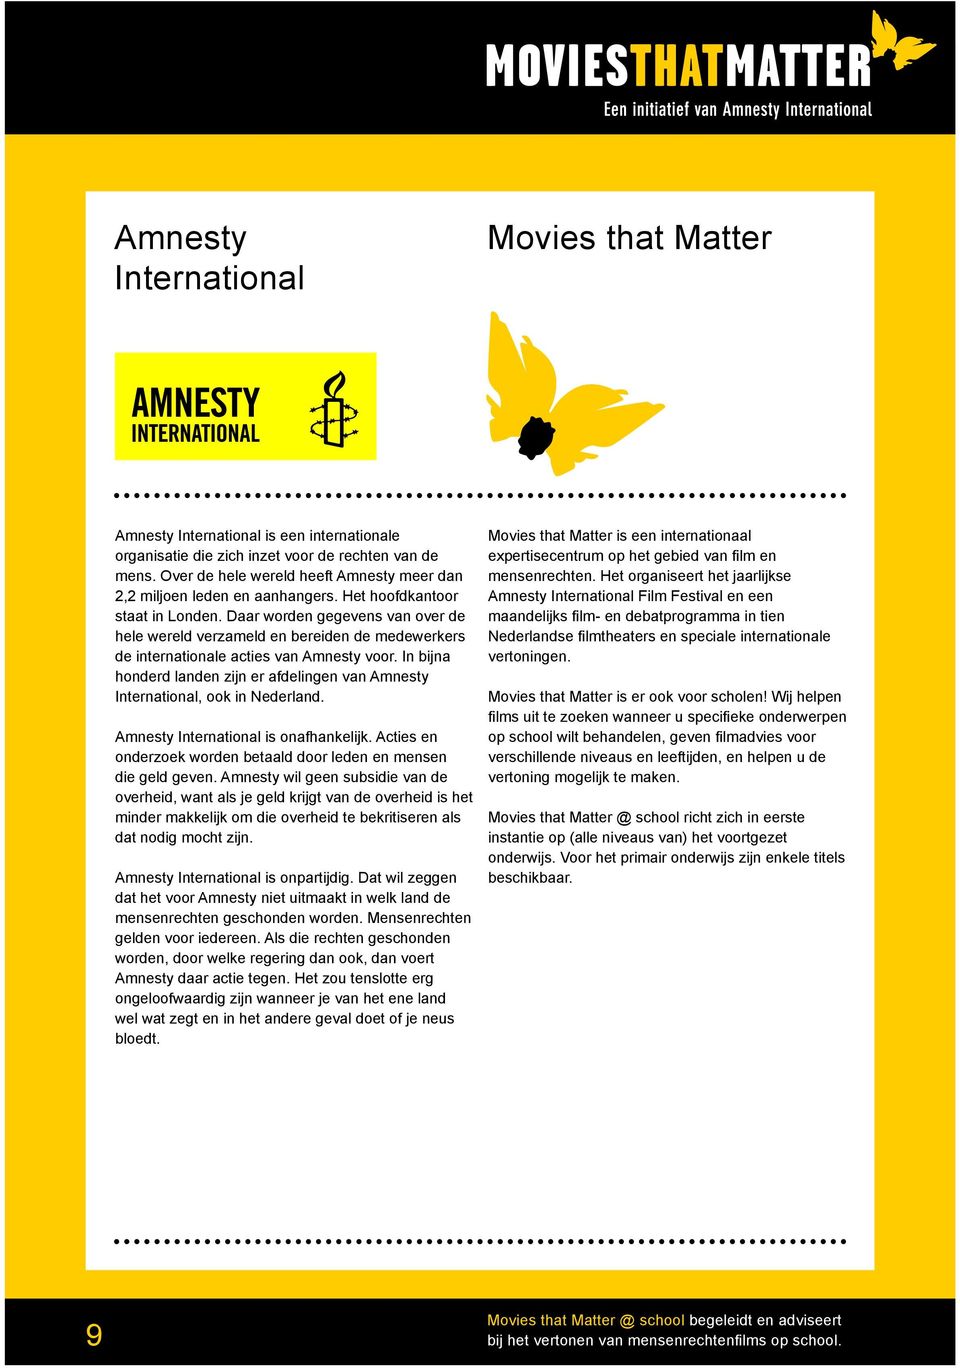 Daar worden gegevens van over de hele wereld verzameld en bereiden de medewerkers de internationale acties van Amnesty voor.